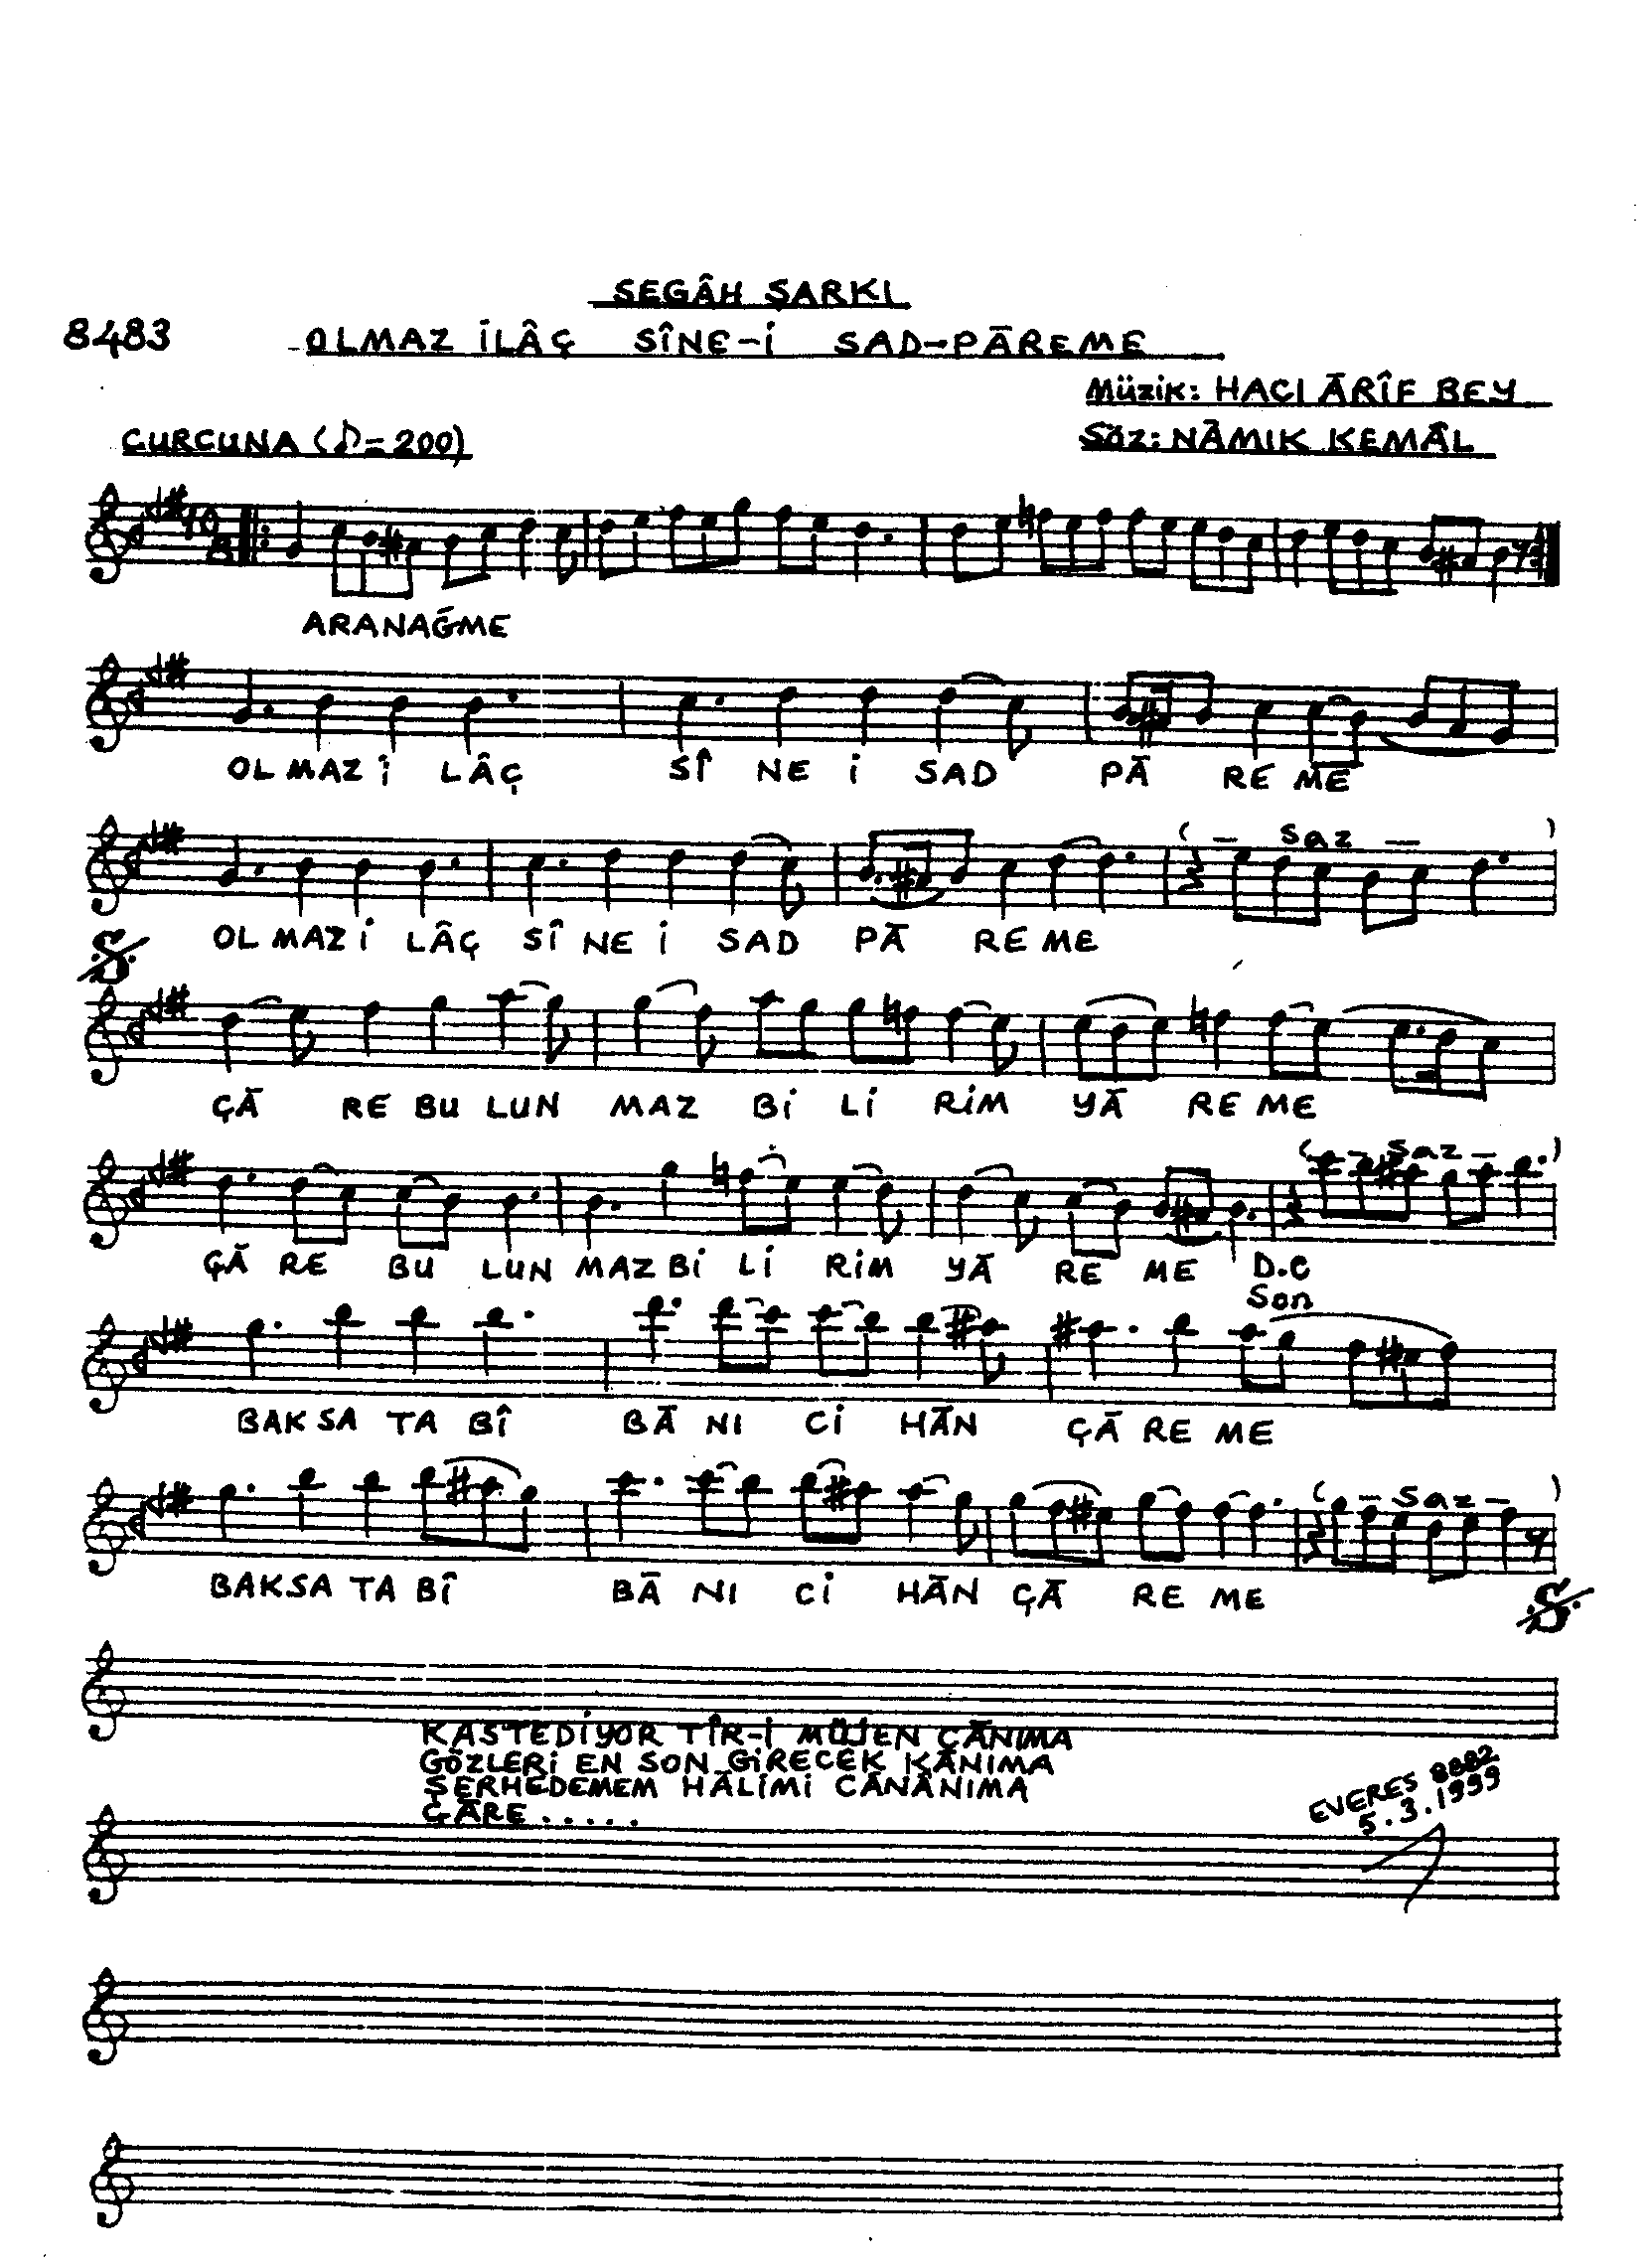 Segâh - Şarkı - Hacı Arif Bey - Sayfa 1